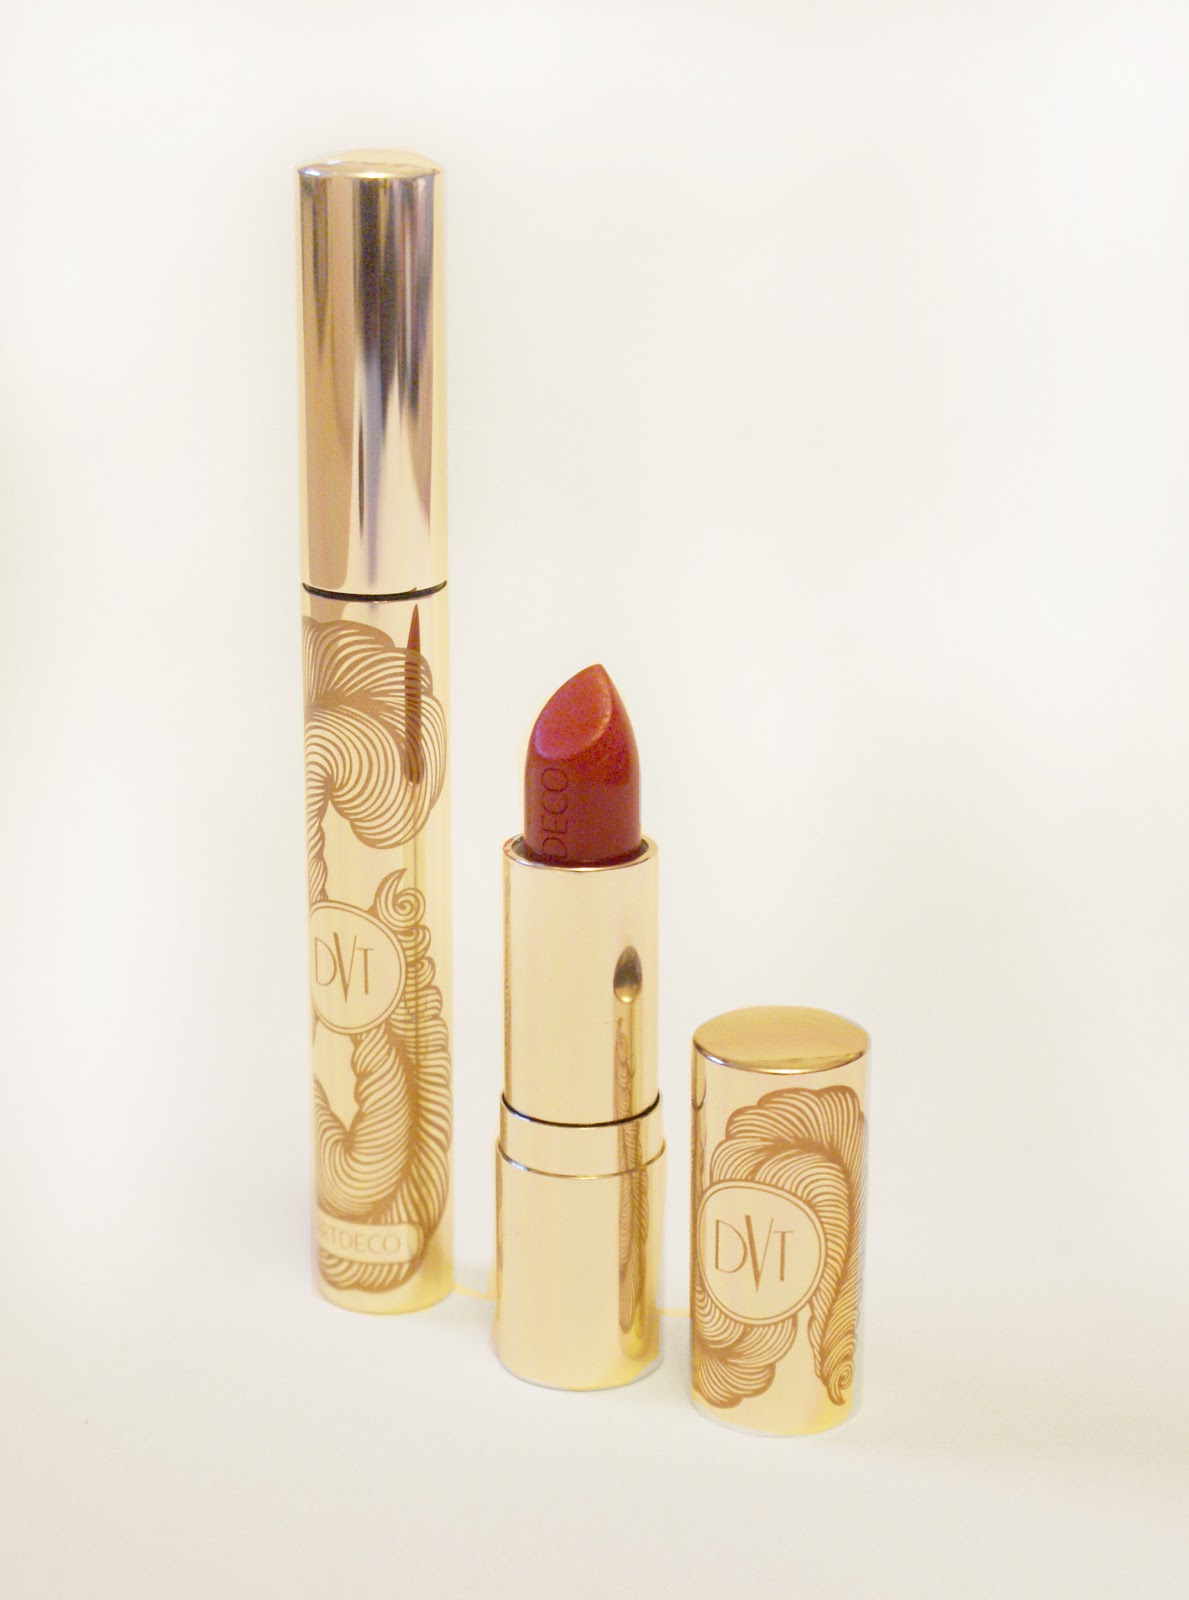 http://4.bp.blogspot.com/-XGSppGixt78/UNR0IvuBtgI/AAAAAAAAG1w/HJRHo-pGhnw/s1600/dita+von+teese+vintage+make+up+makeup+lipstick+lip+stick+red+lips+mascara+pin+up+gifts+accessories+cosmetics+.jpg